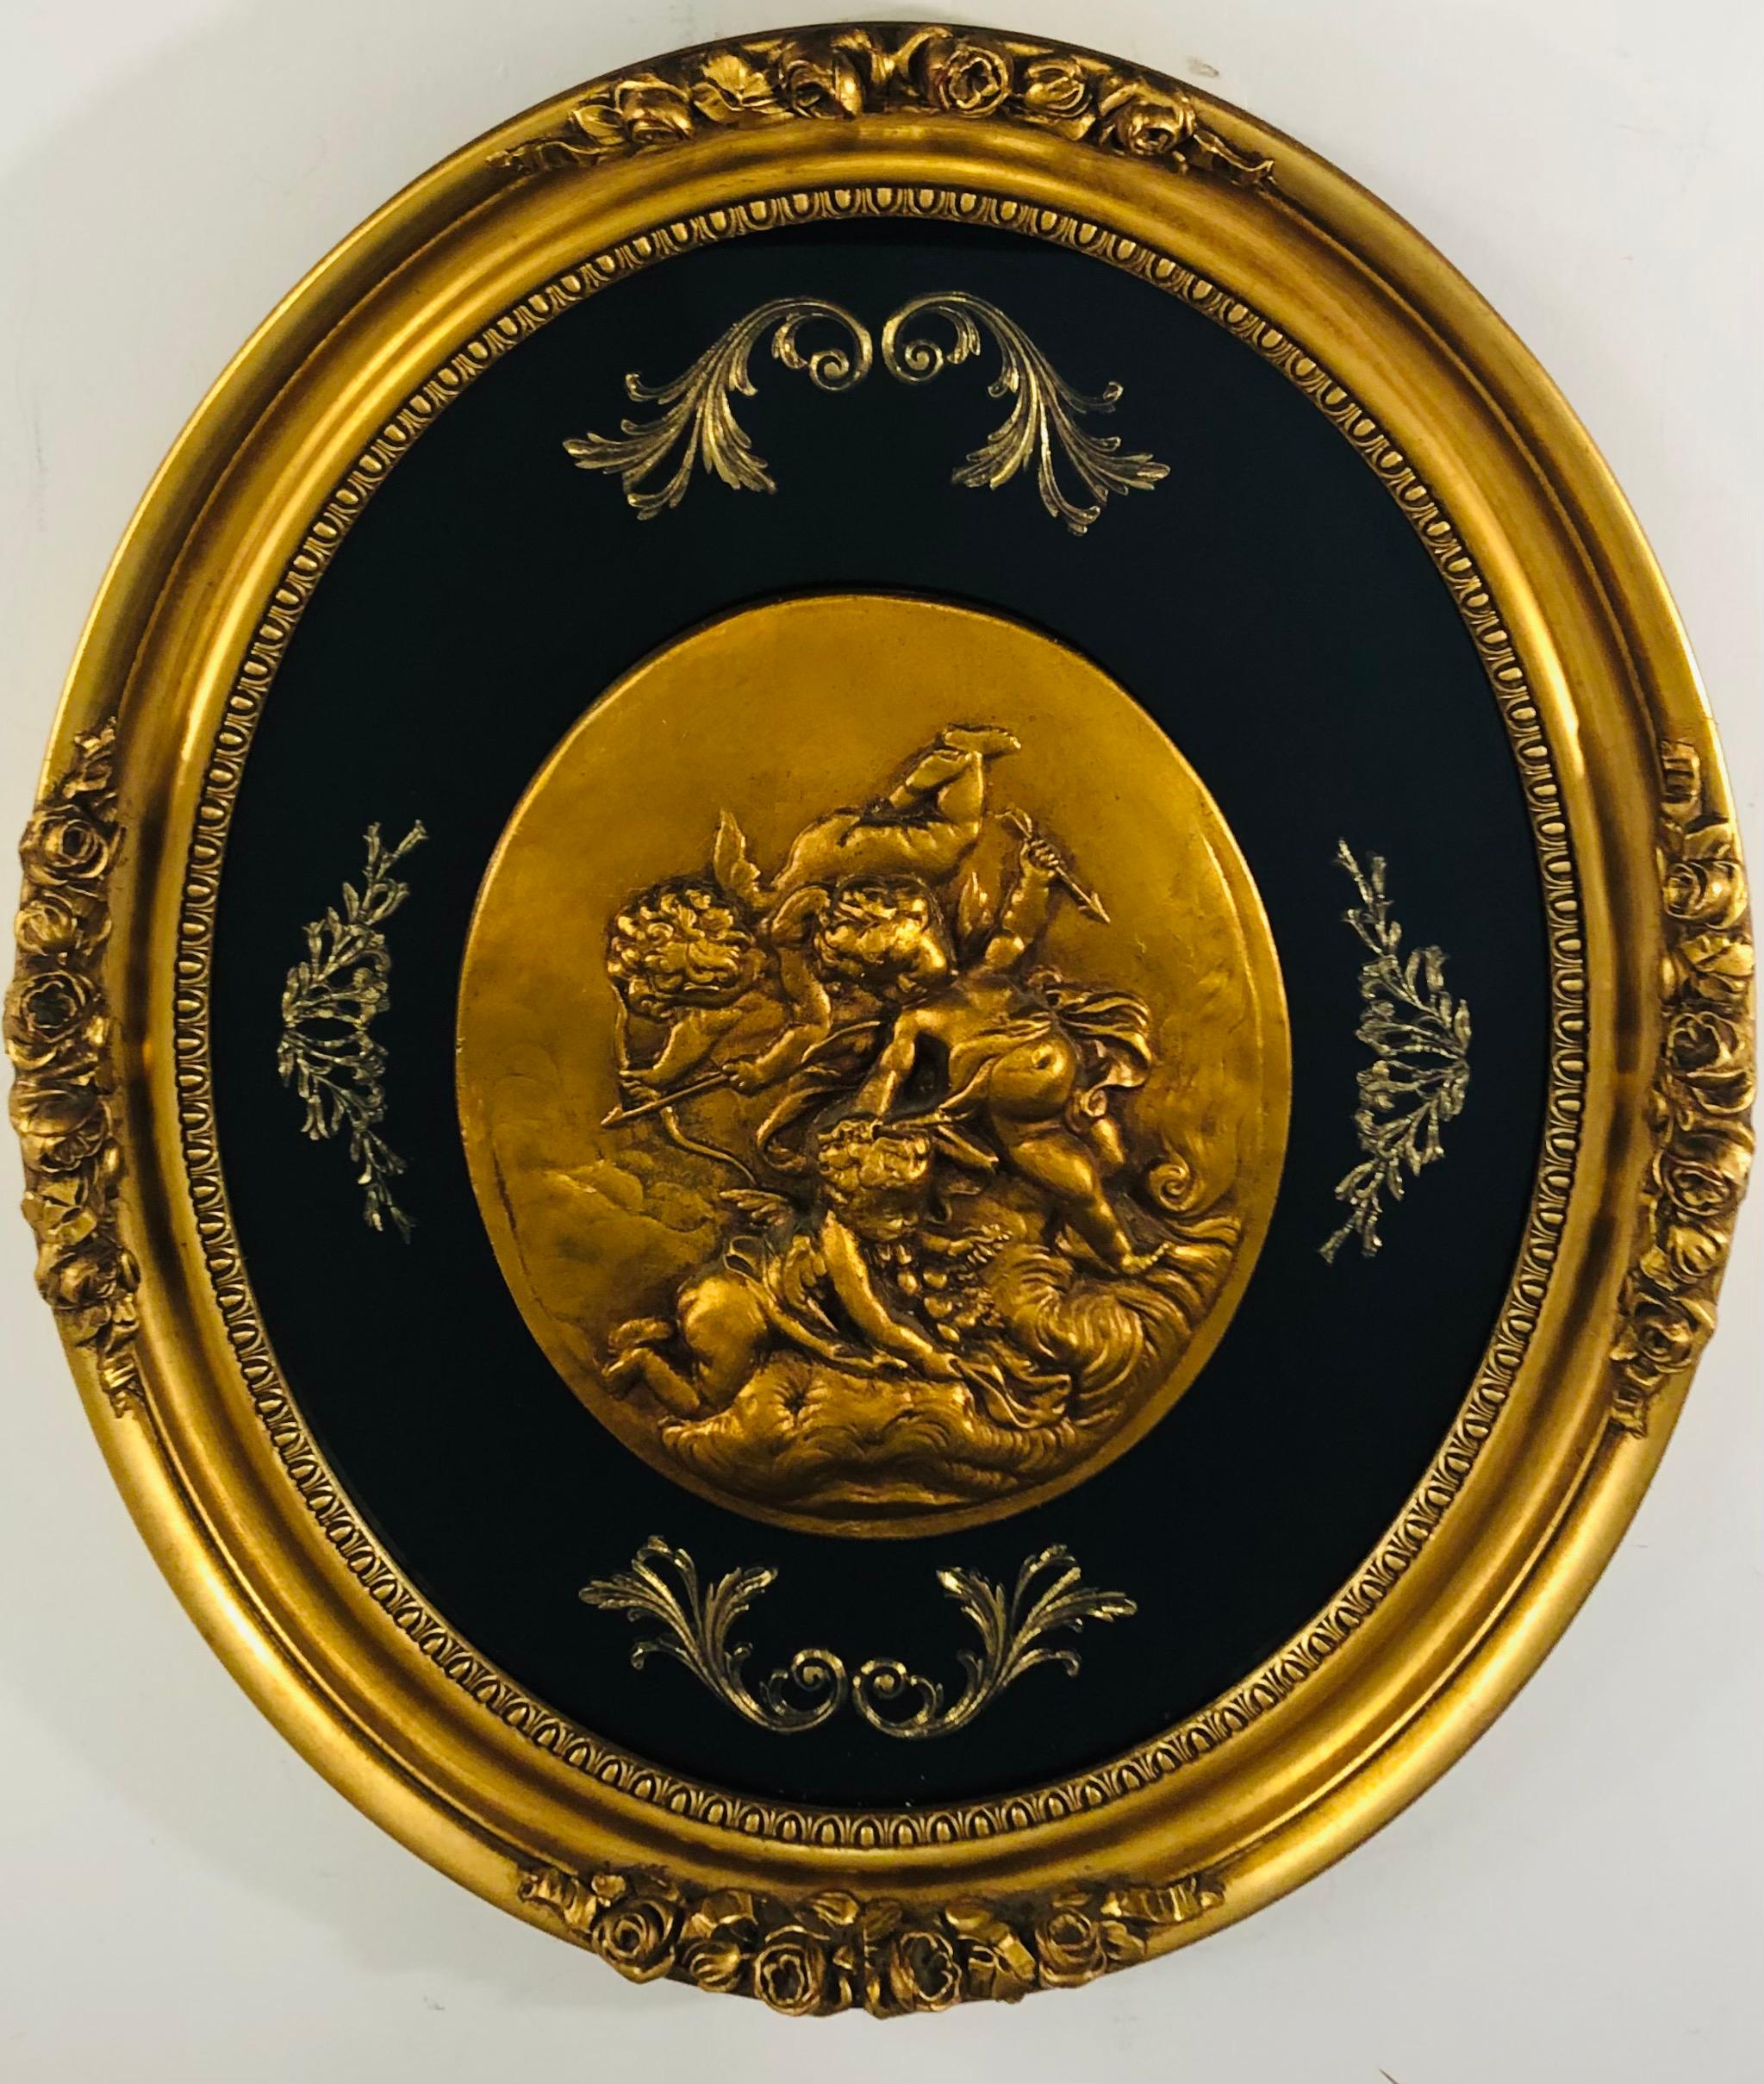 Eine stilvolle und elegante handgemalte ovale Plakette mit geflügelten Putten, die Pfeile halten. Das schöne Wandbild ist aus Holz geschnitzt und fein in Gold bemalt. Die Putten sind von einem Hintergrund aus schwarzem Samt mit bronzefarbenen